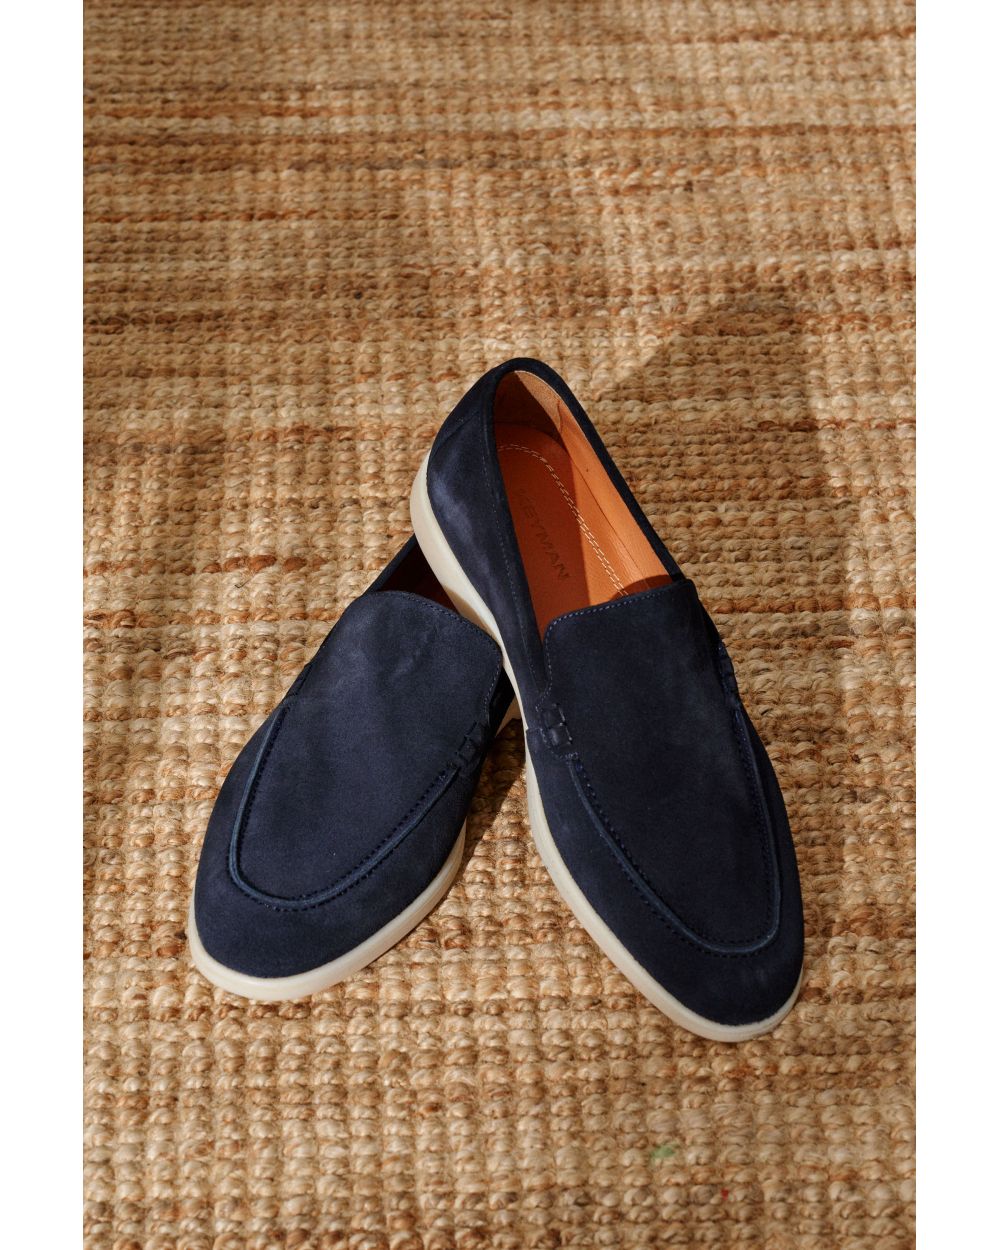 Туфли мужские синие замшевые лоферы (summer walk loafers)